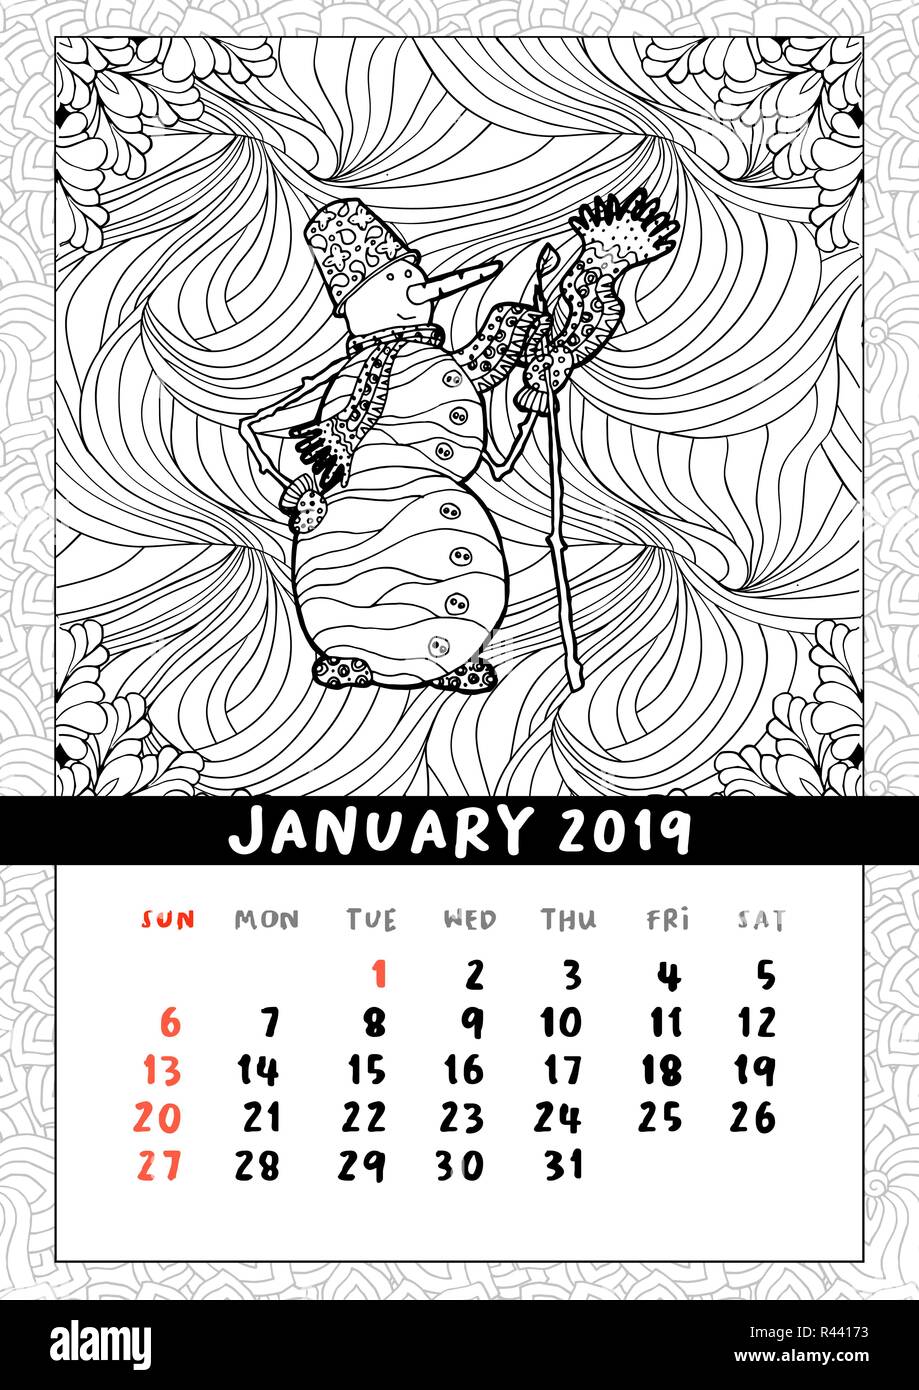 Pupazzo Di Neve In Stile Doodle Calendario Gennaio 19 Libro Da Colorare Poster Per Adulti E